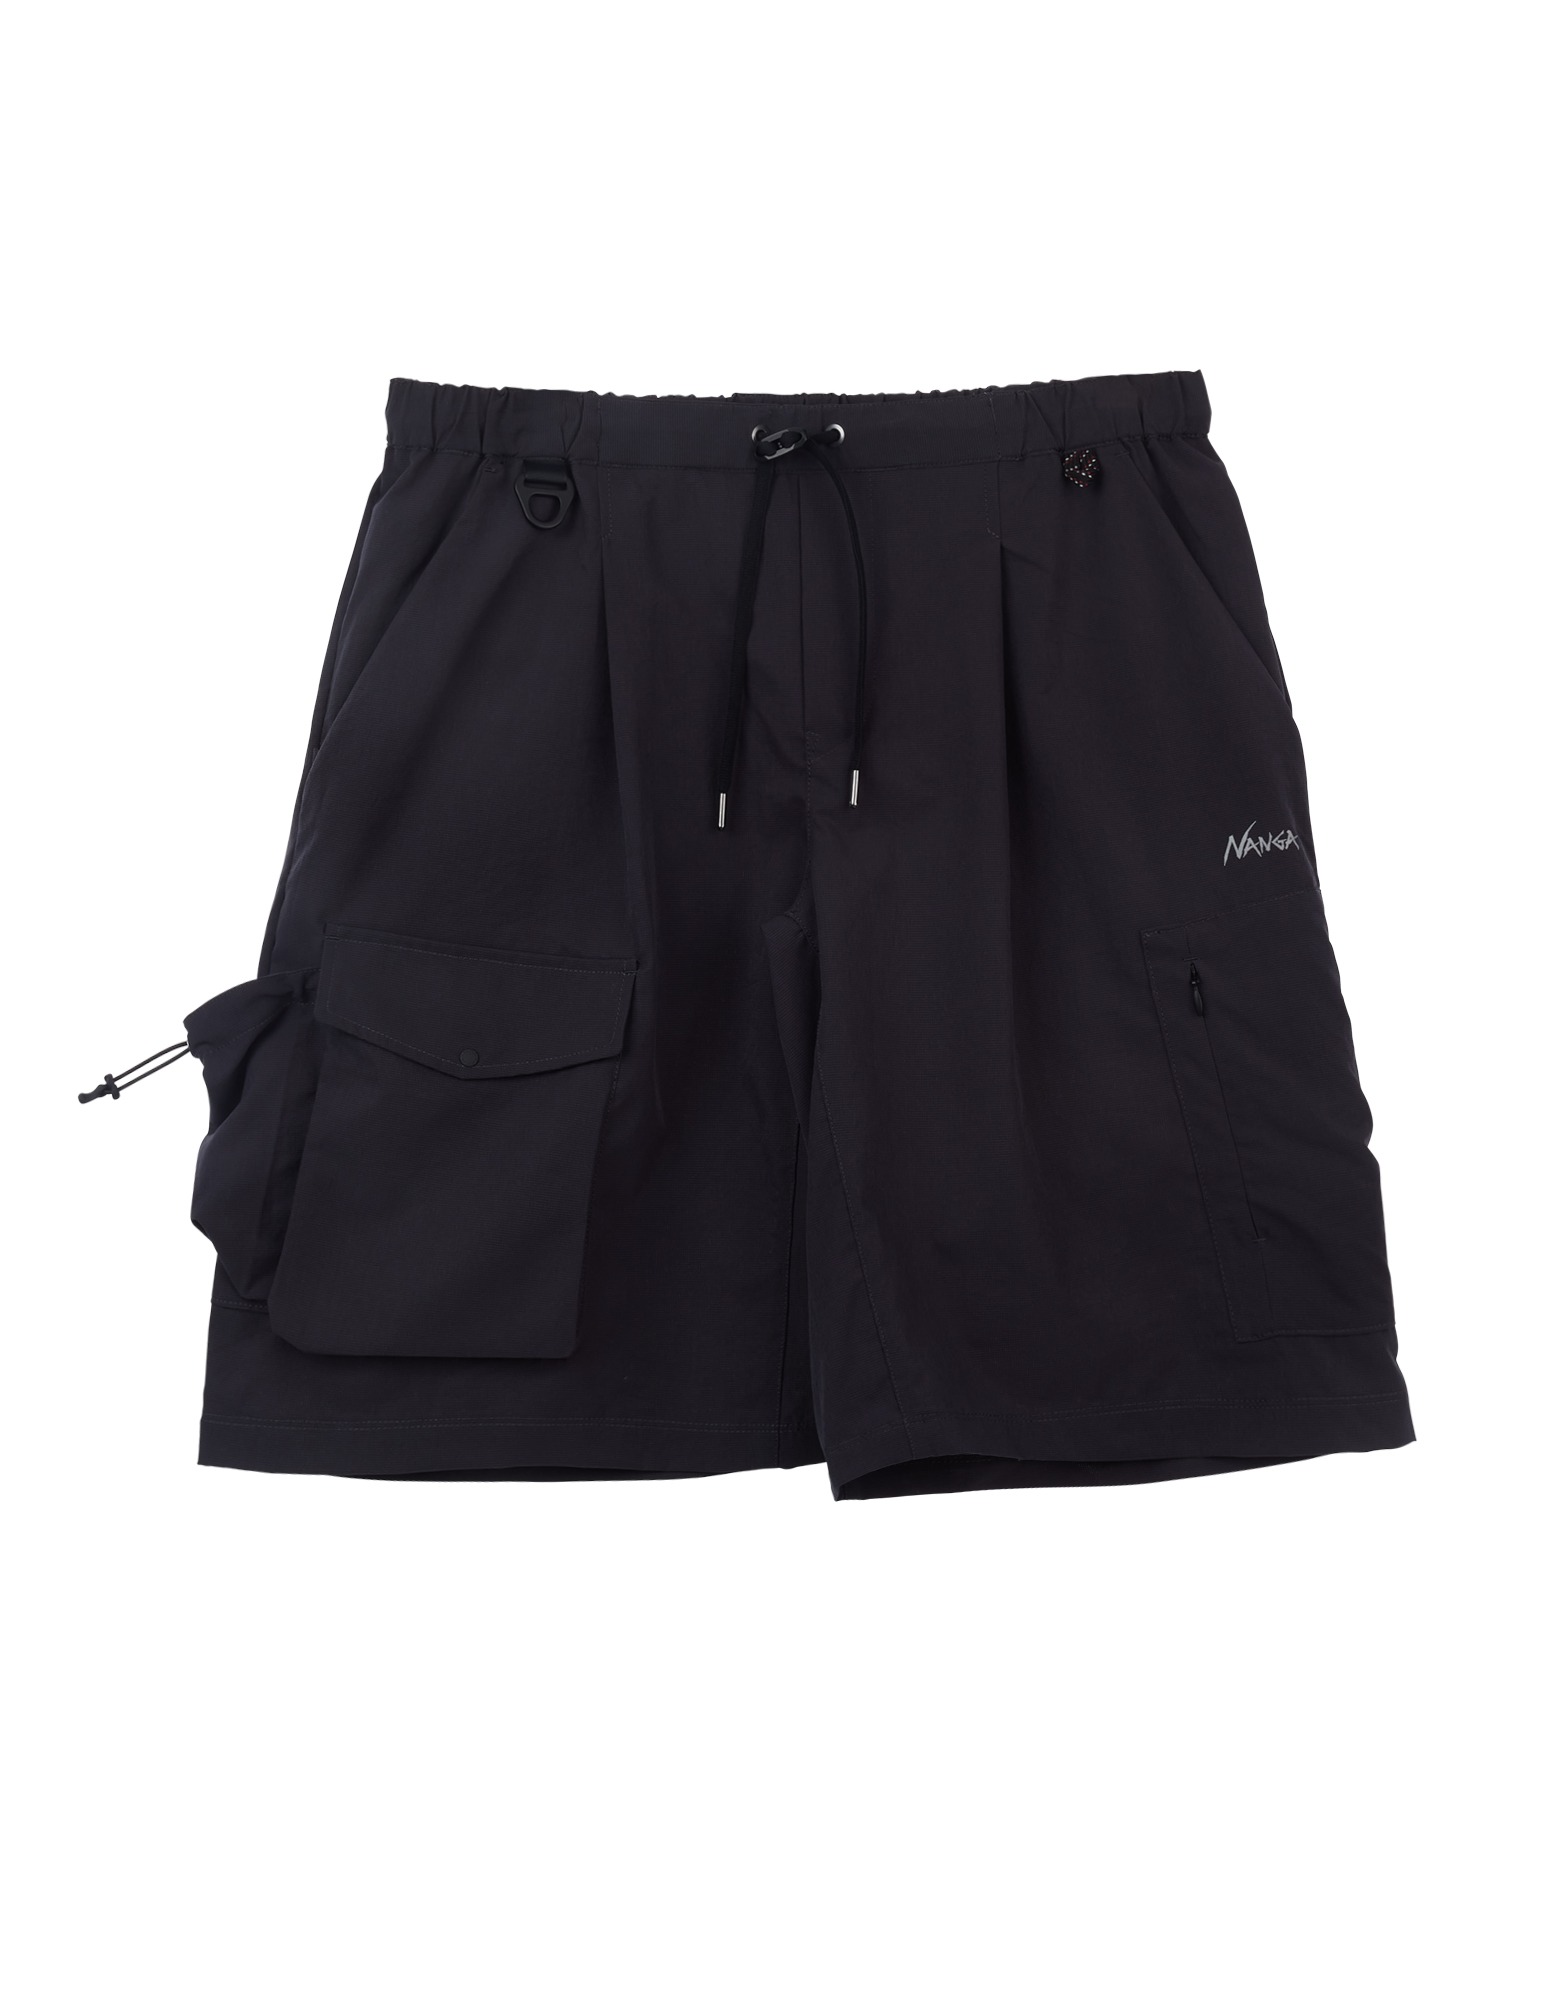 Utility PK Cargo Shorts (Black)